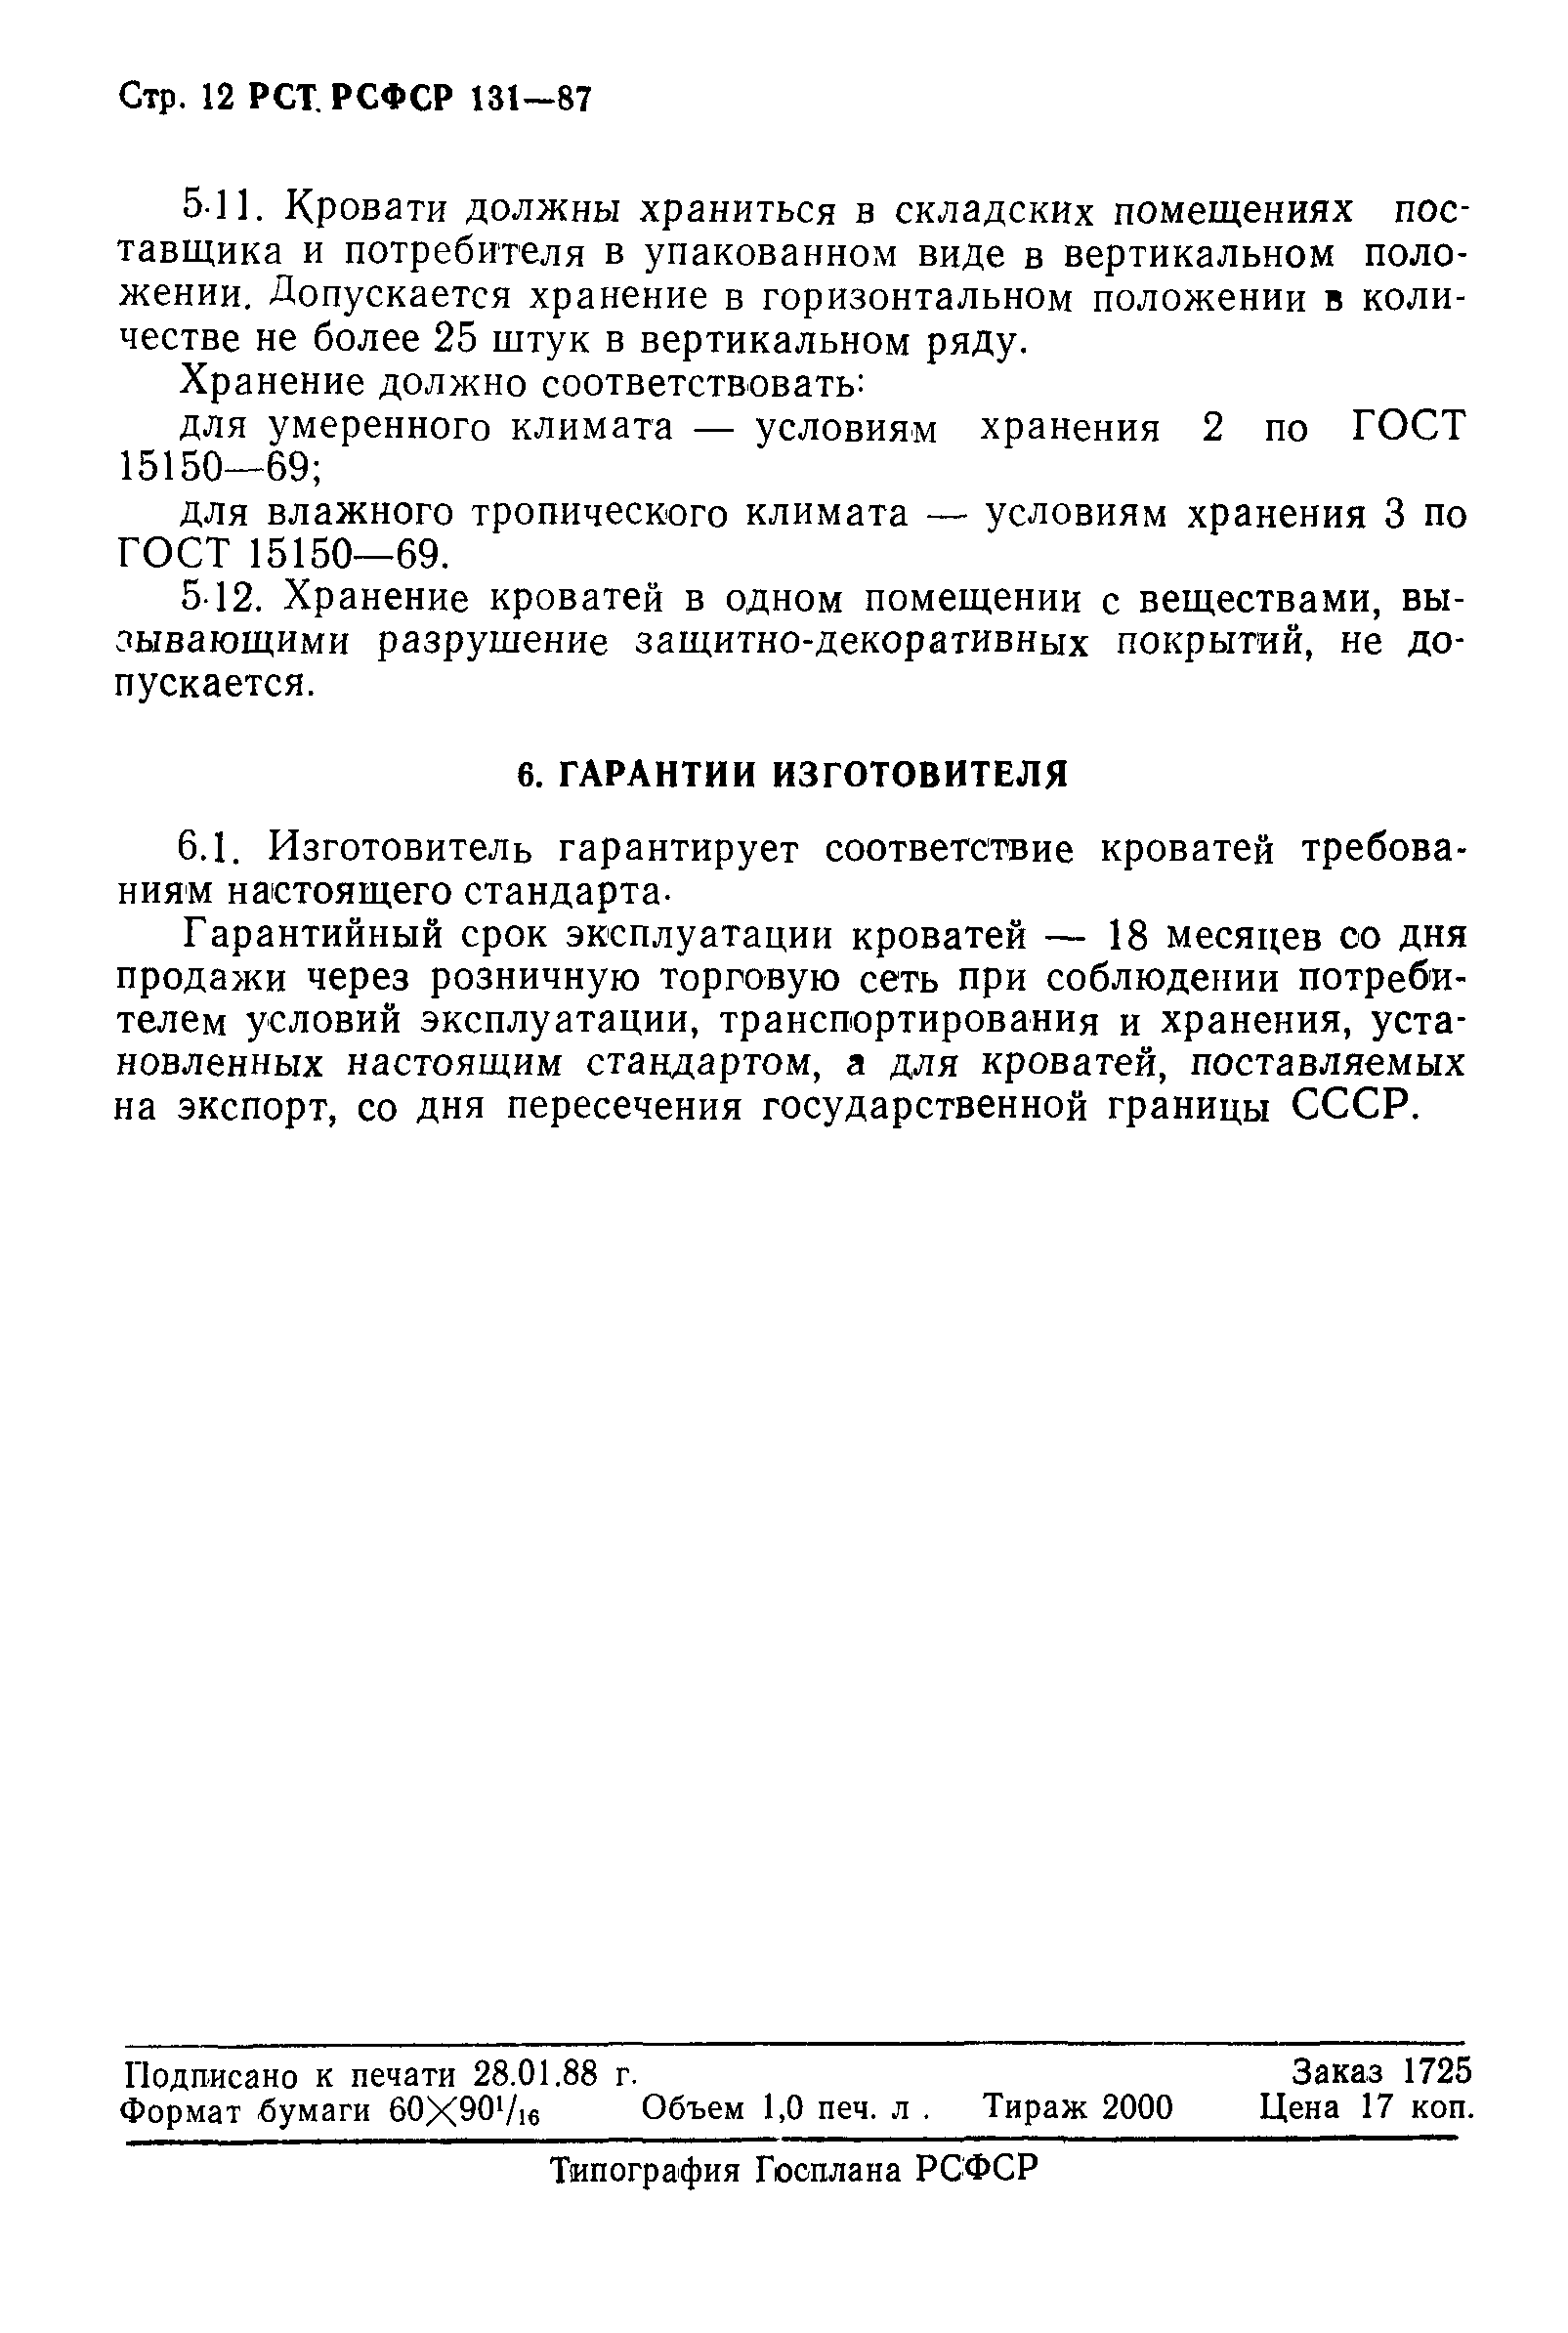 РСТ РСФСР 131-87